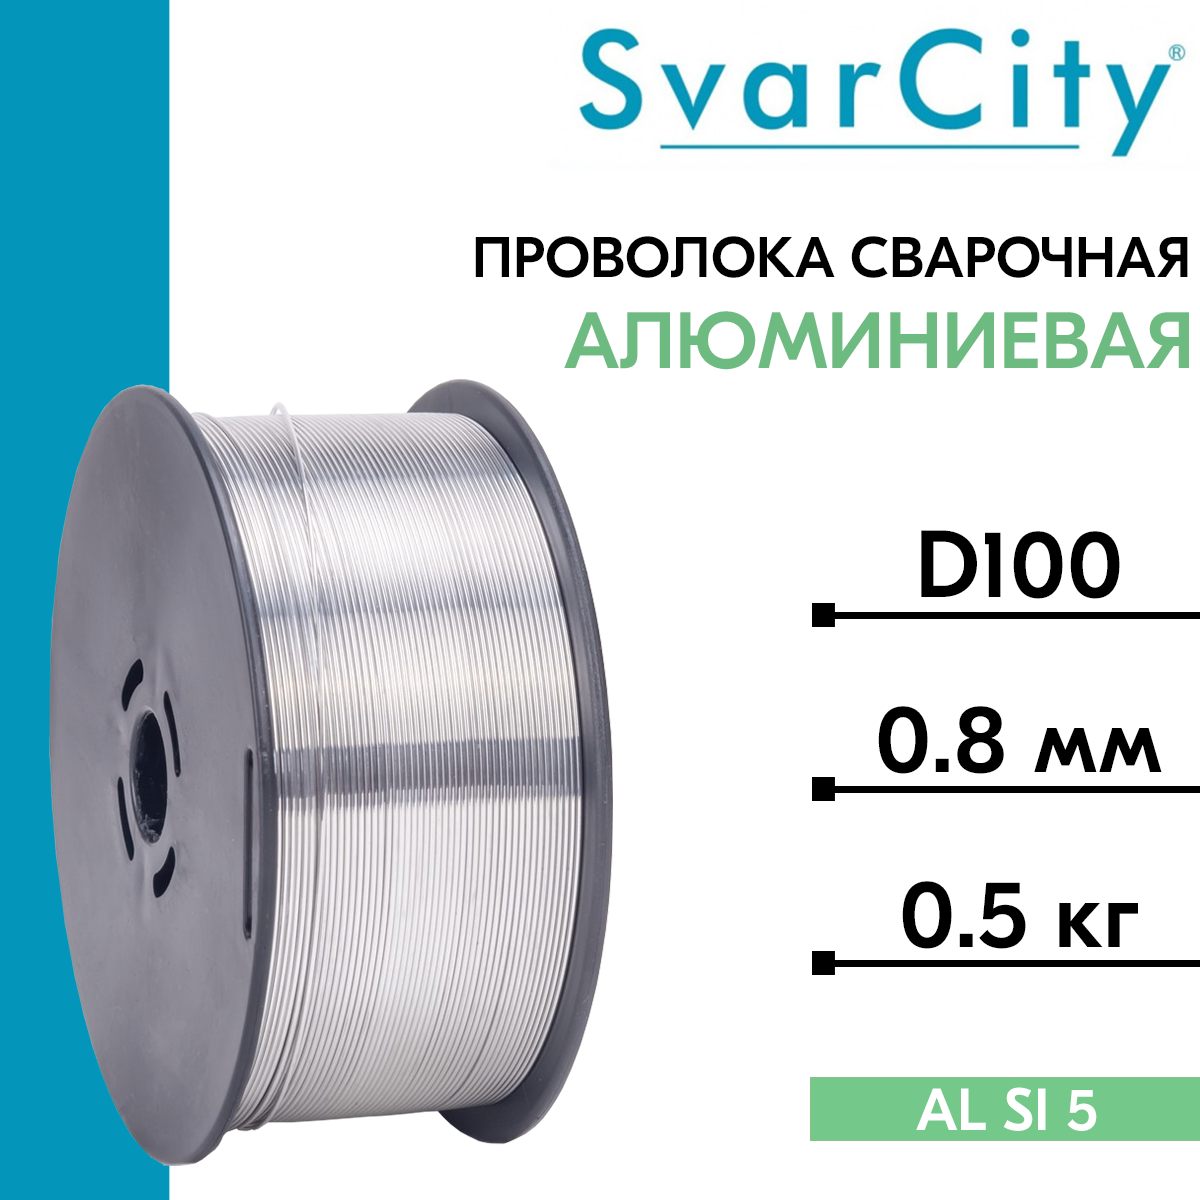 Проволока сварочная алюминиевая ER 5356 д. 0.8 мм 0.5 кг (SvarCity) / AWS A5.10 (аналог Св-АМг5)